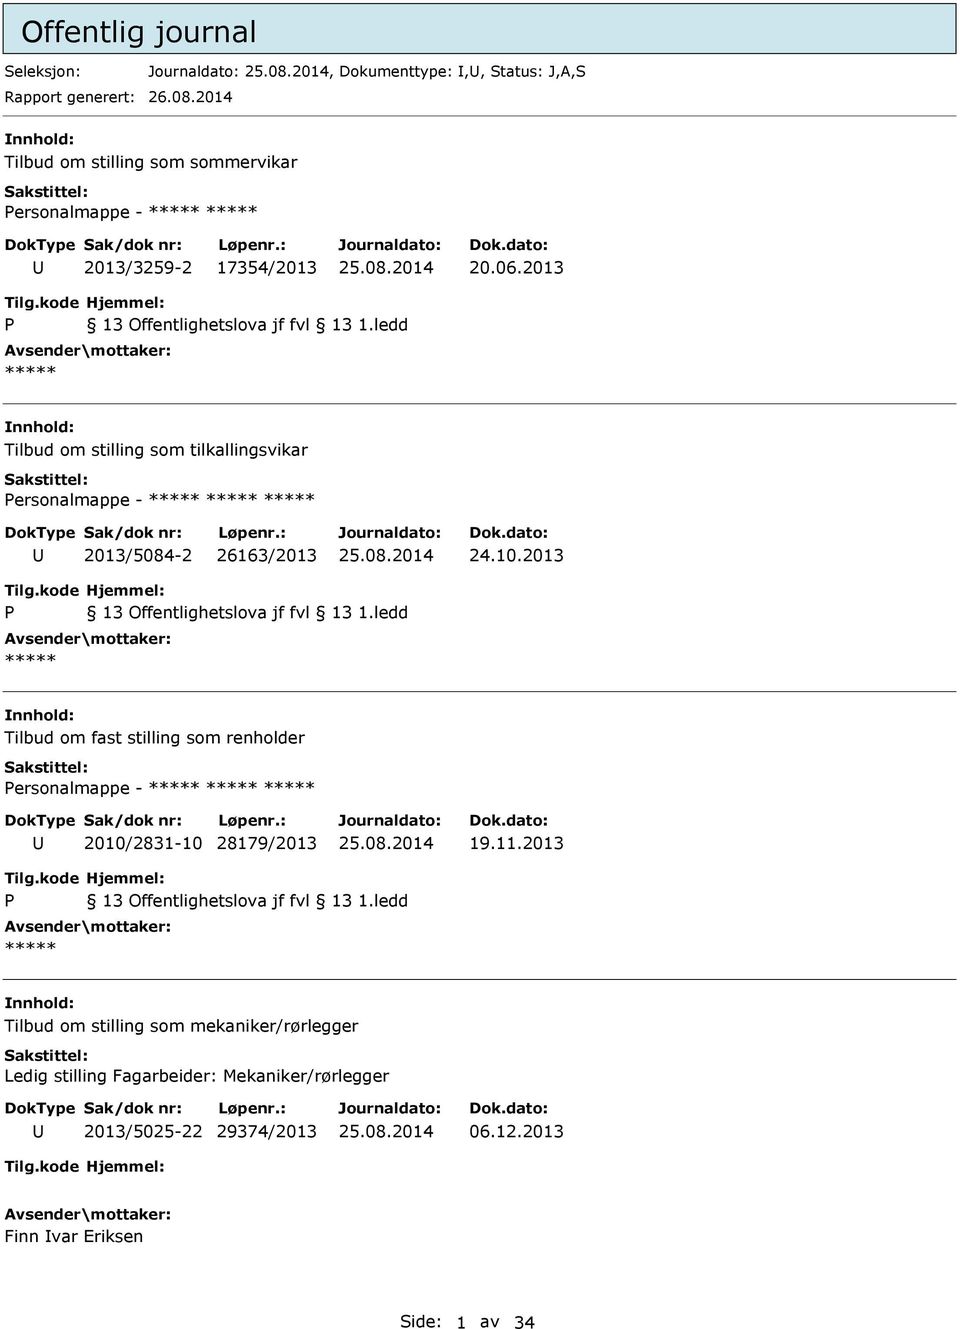 2013 Tilbud om stilling som tilkallingsvikar ersonalmappe - 2013/5084-2 26163/2013 24.10.